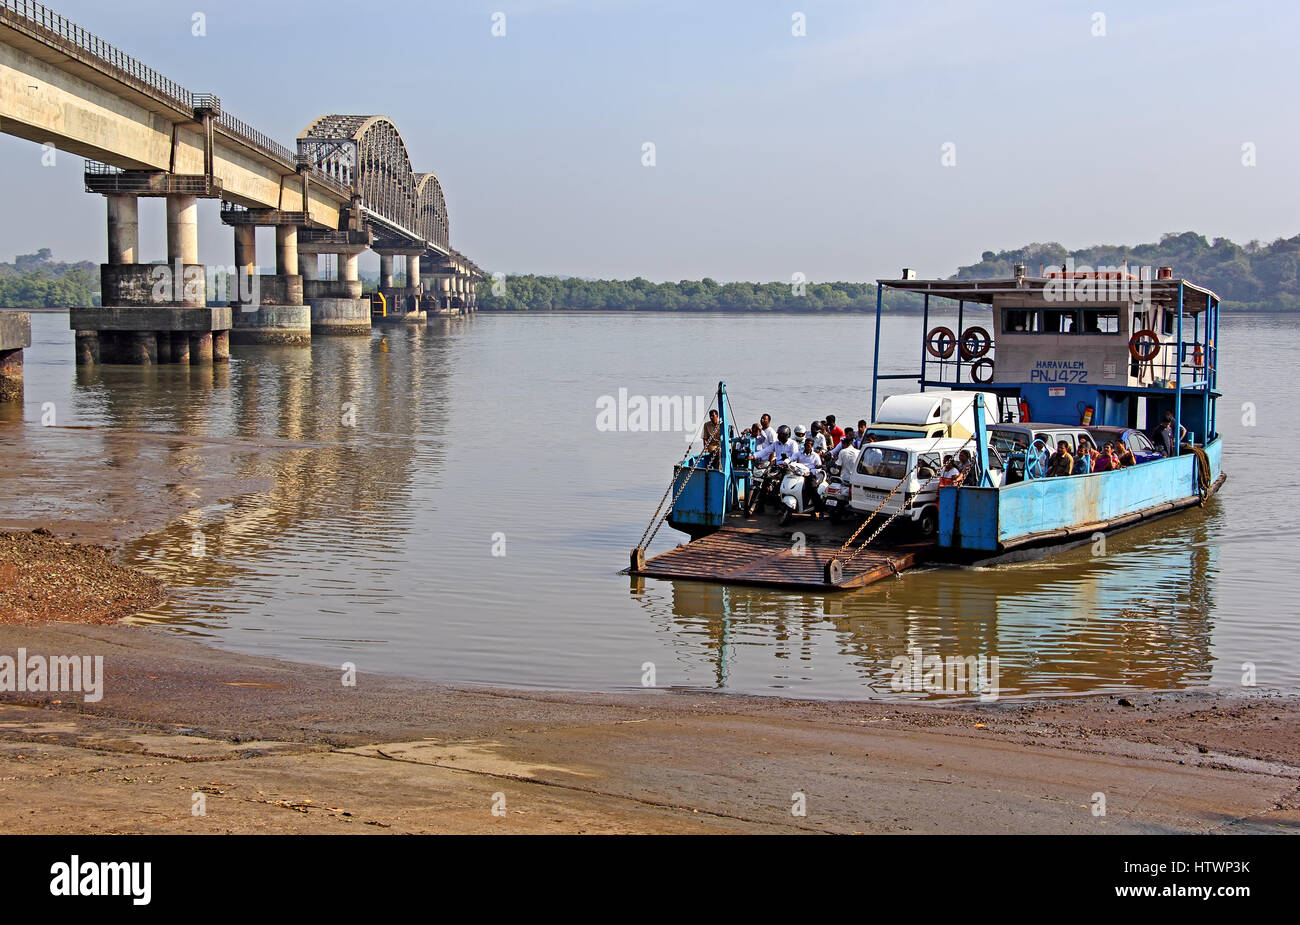 Les transferts en bateau ferry passagers et véhicules à travers la rivière Zuari à Goa, Inde. Les transbordeurs sont utilisés lorsqu'il n'a pas de pont de la connectivité. Banque D'Images